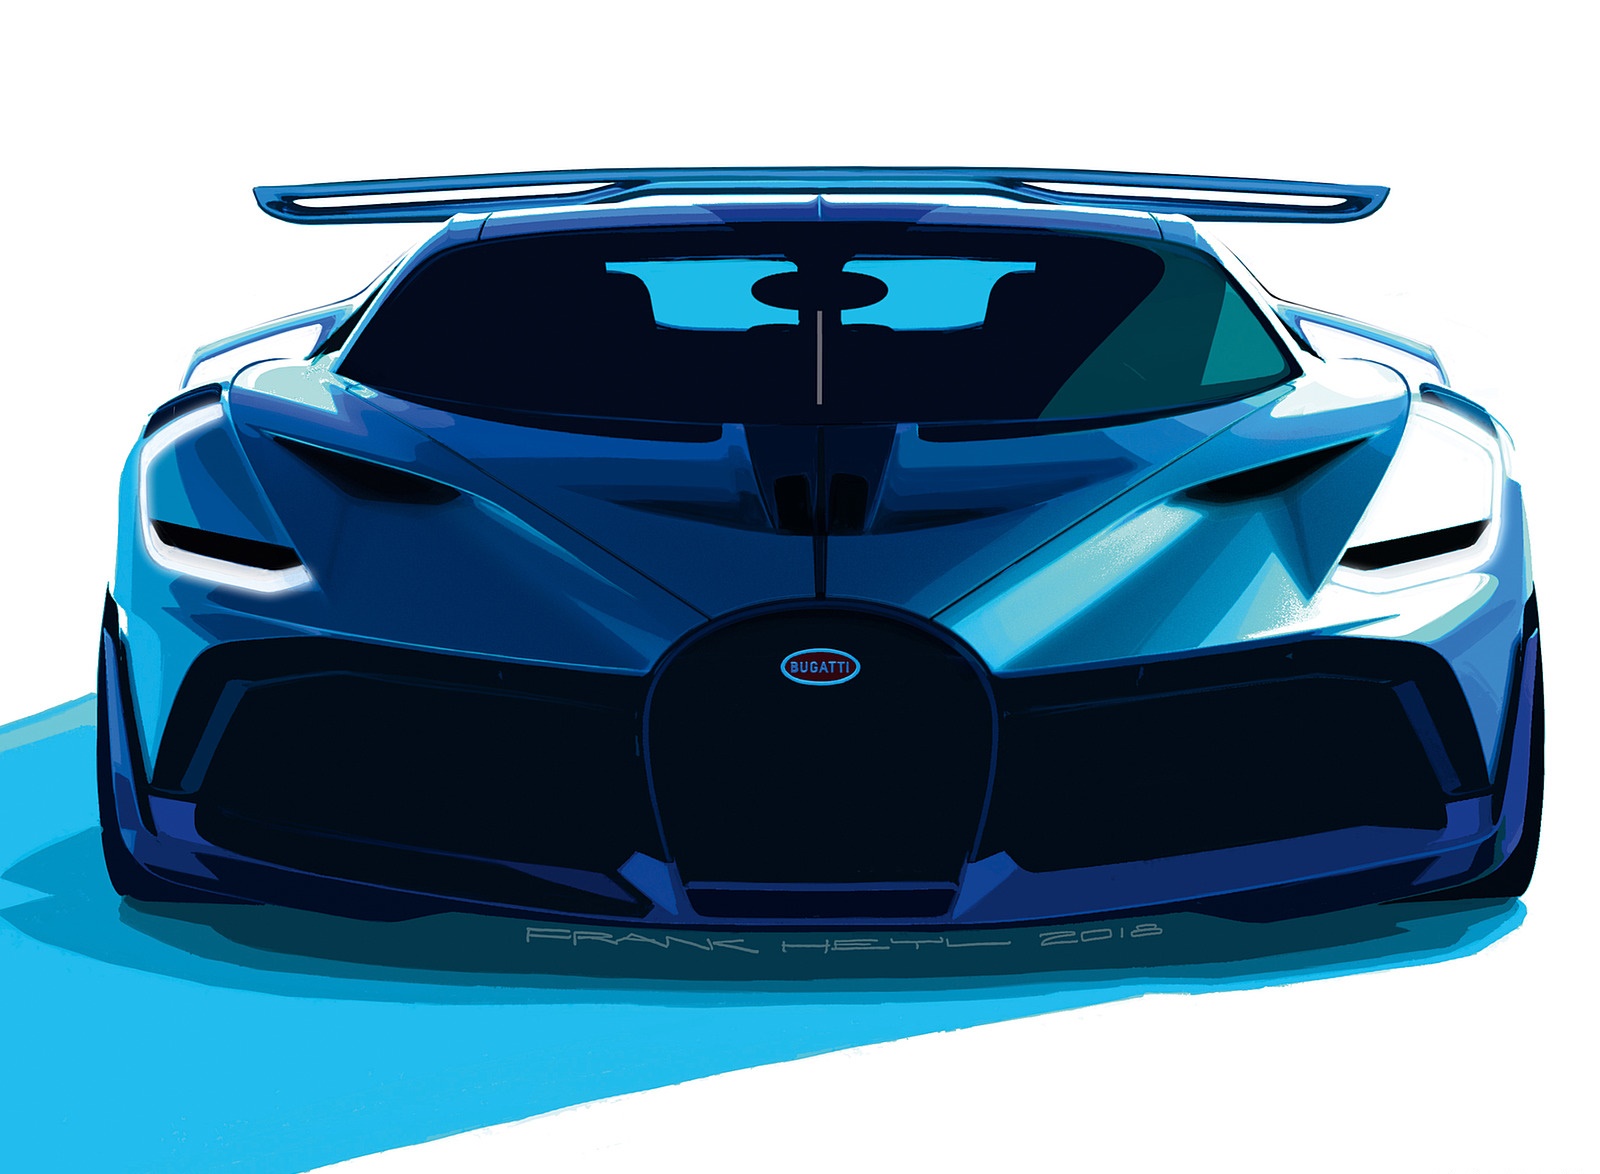 2019 Bugatti Divo Design Sketch Wallpapers #53 of 57